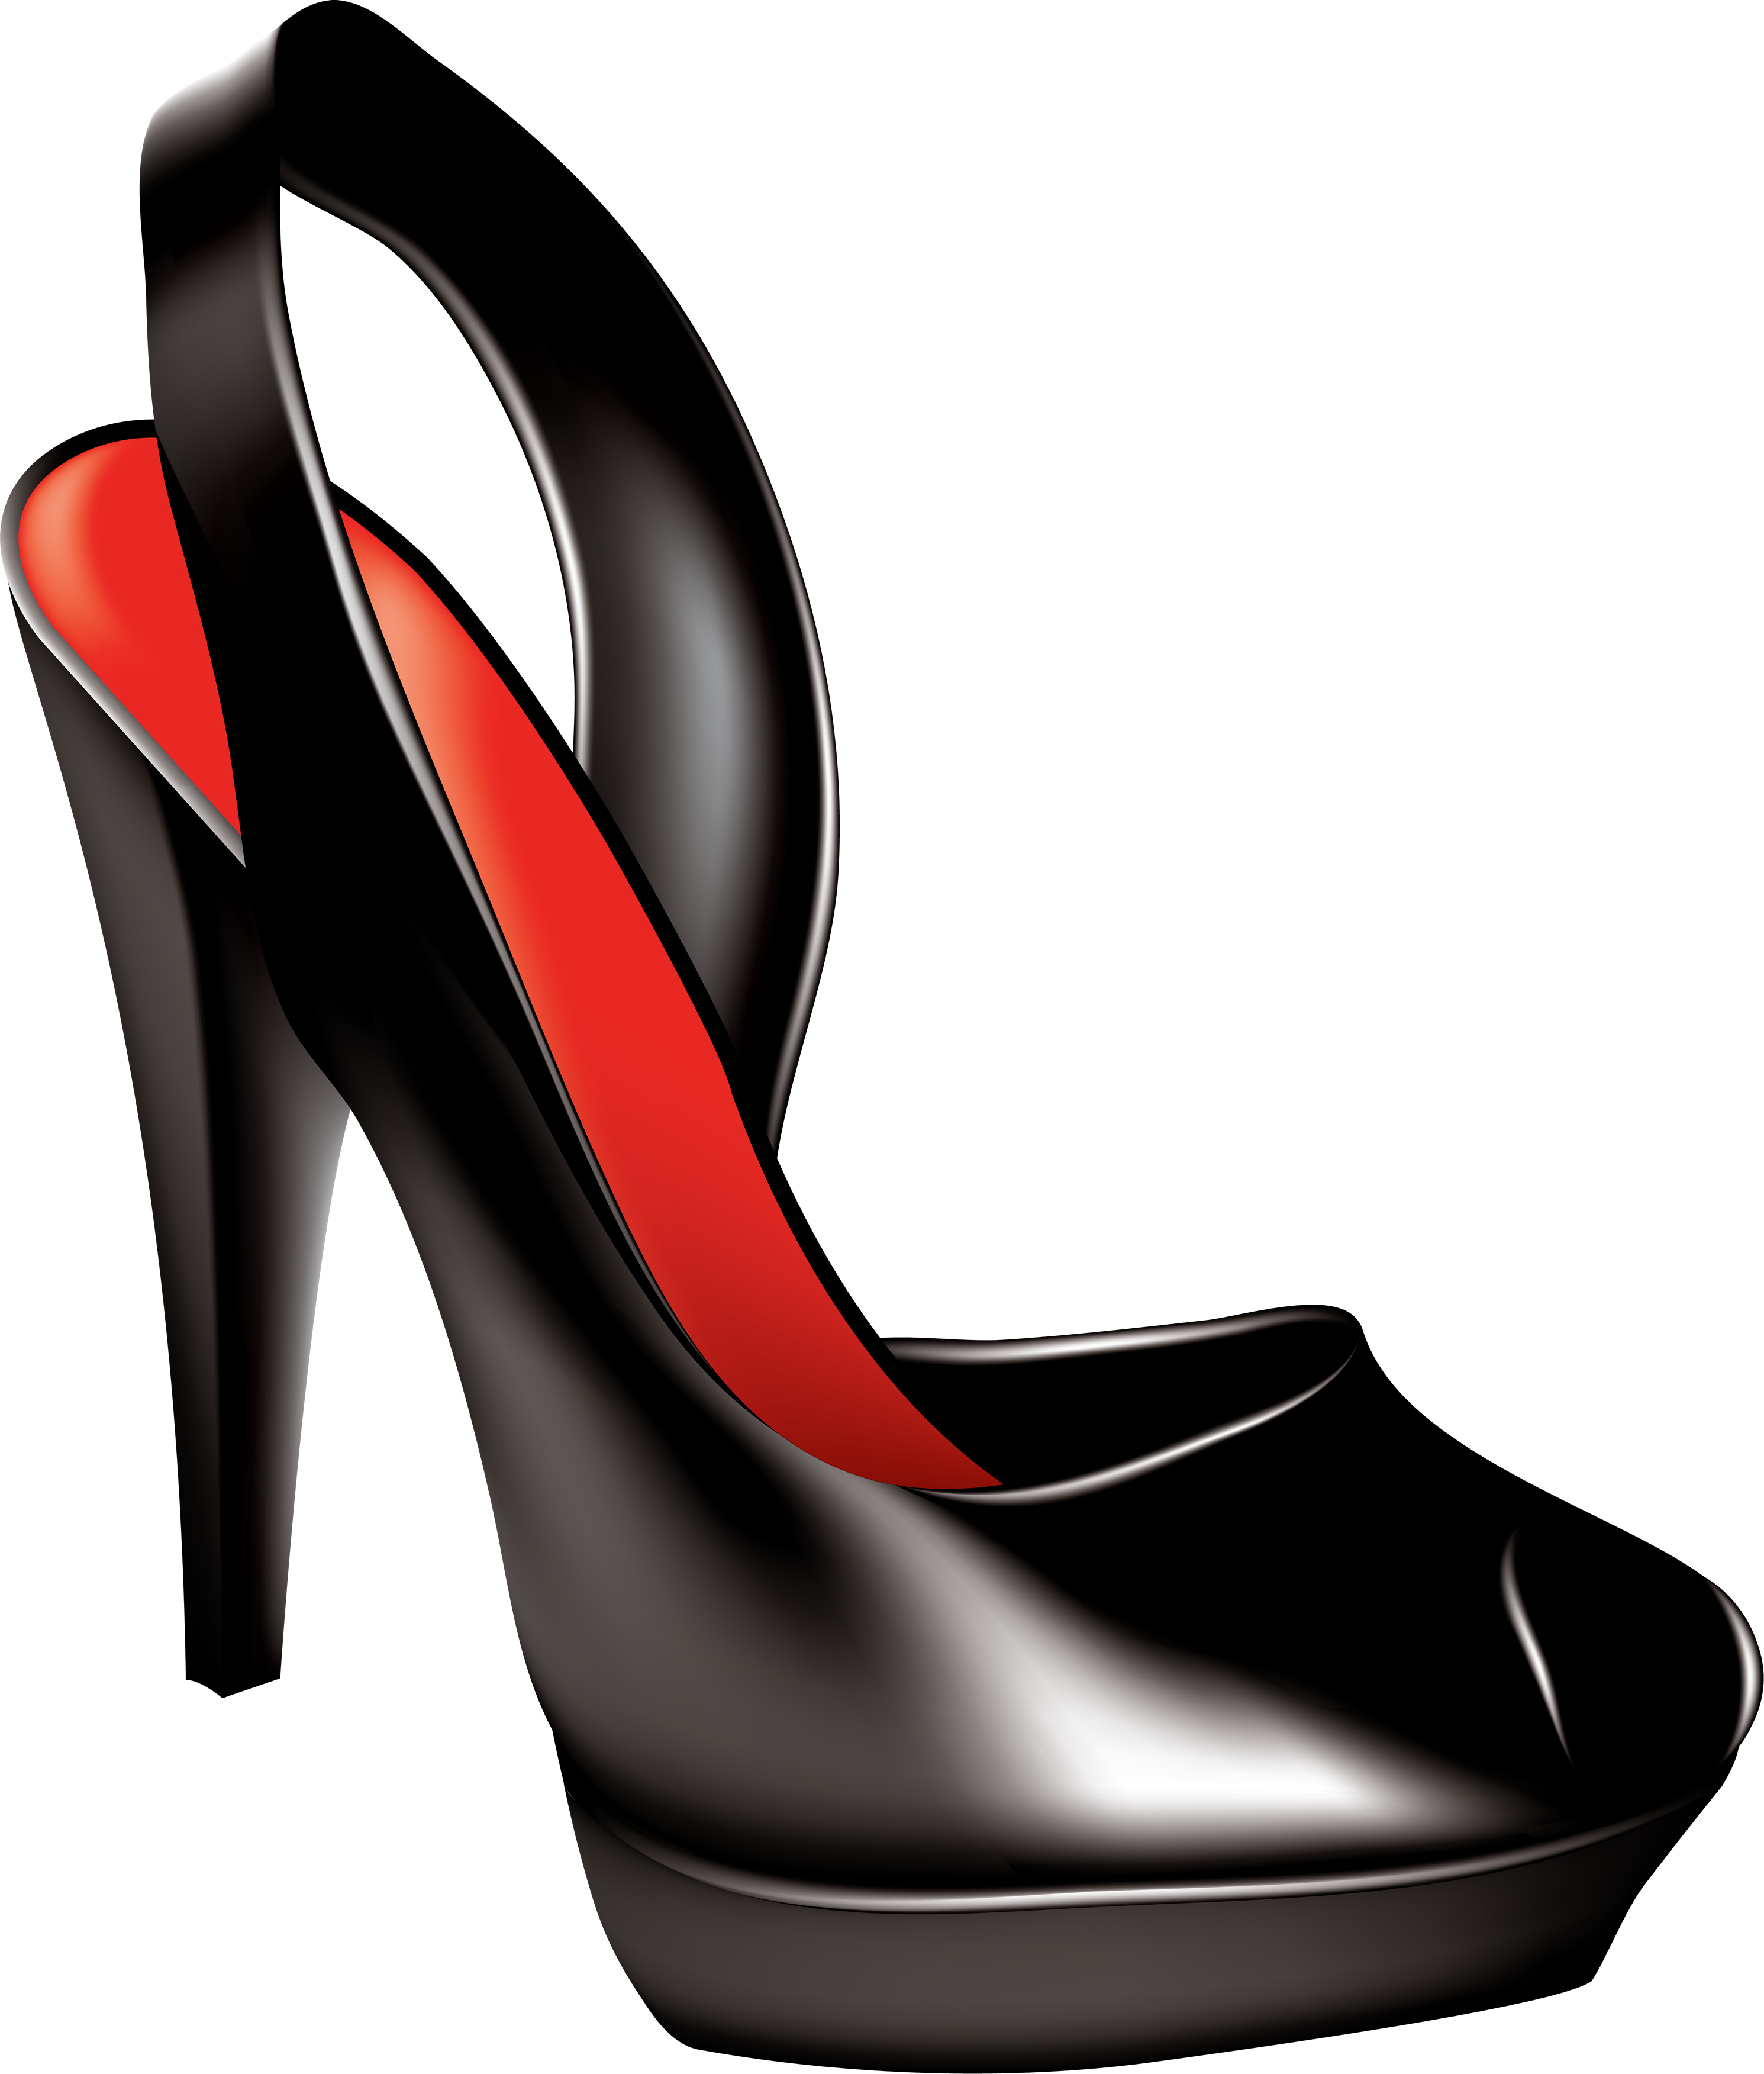 Women shoes png image. Clipart rocket shoe